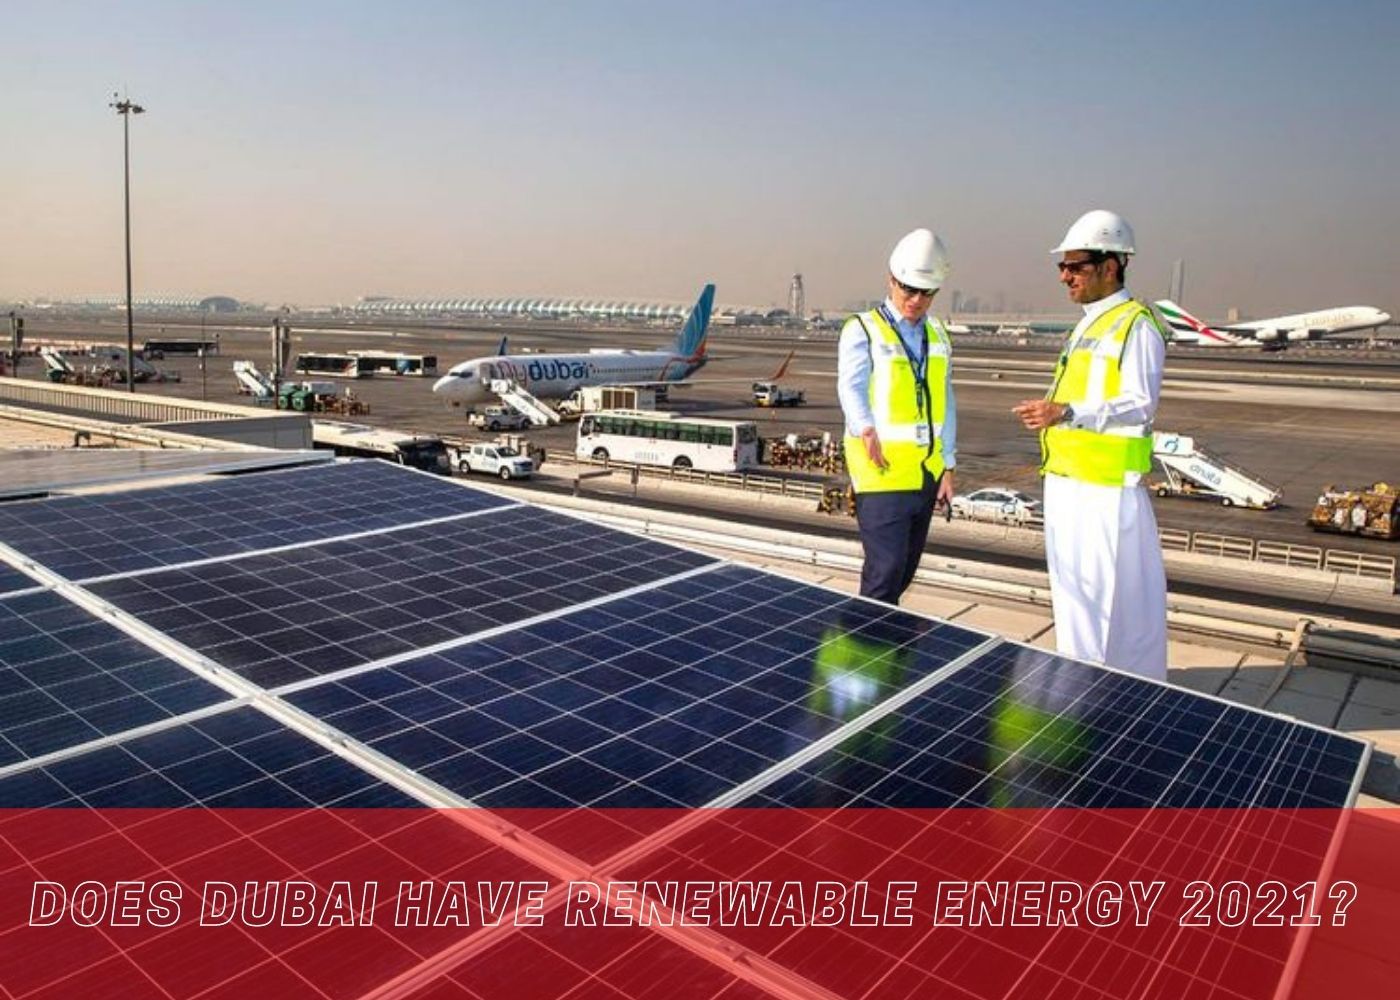 Does Dubai have renewable energy 2021? 